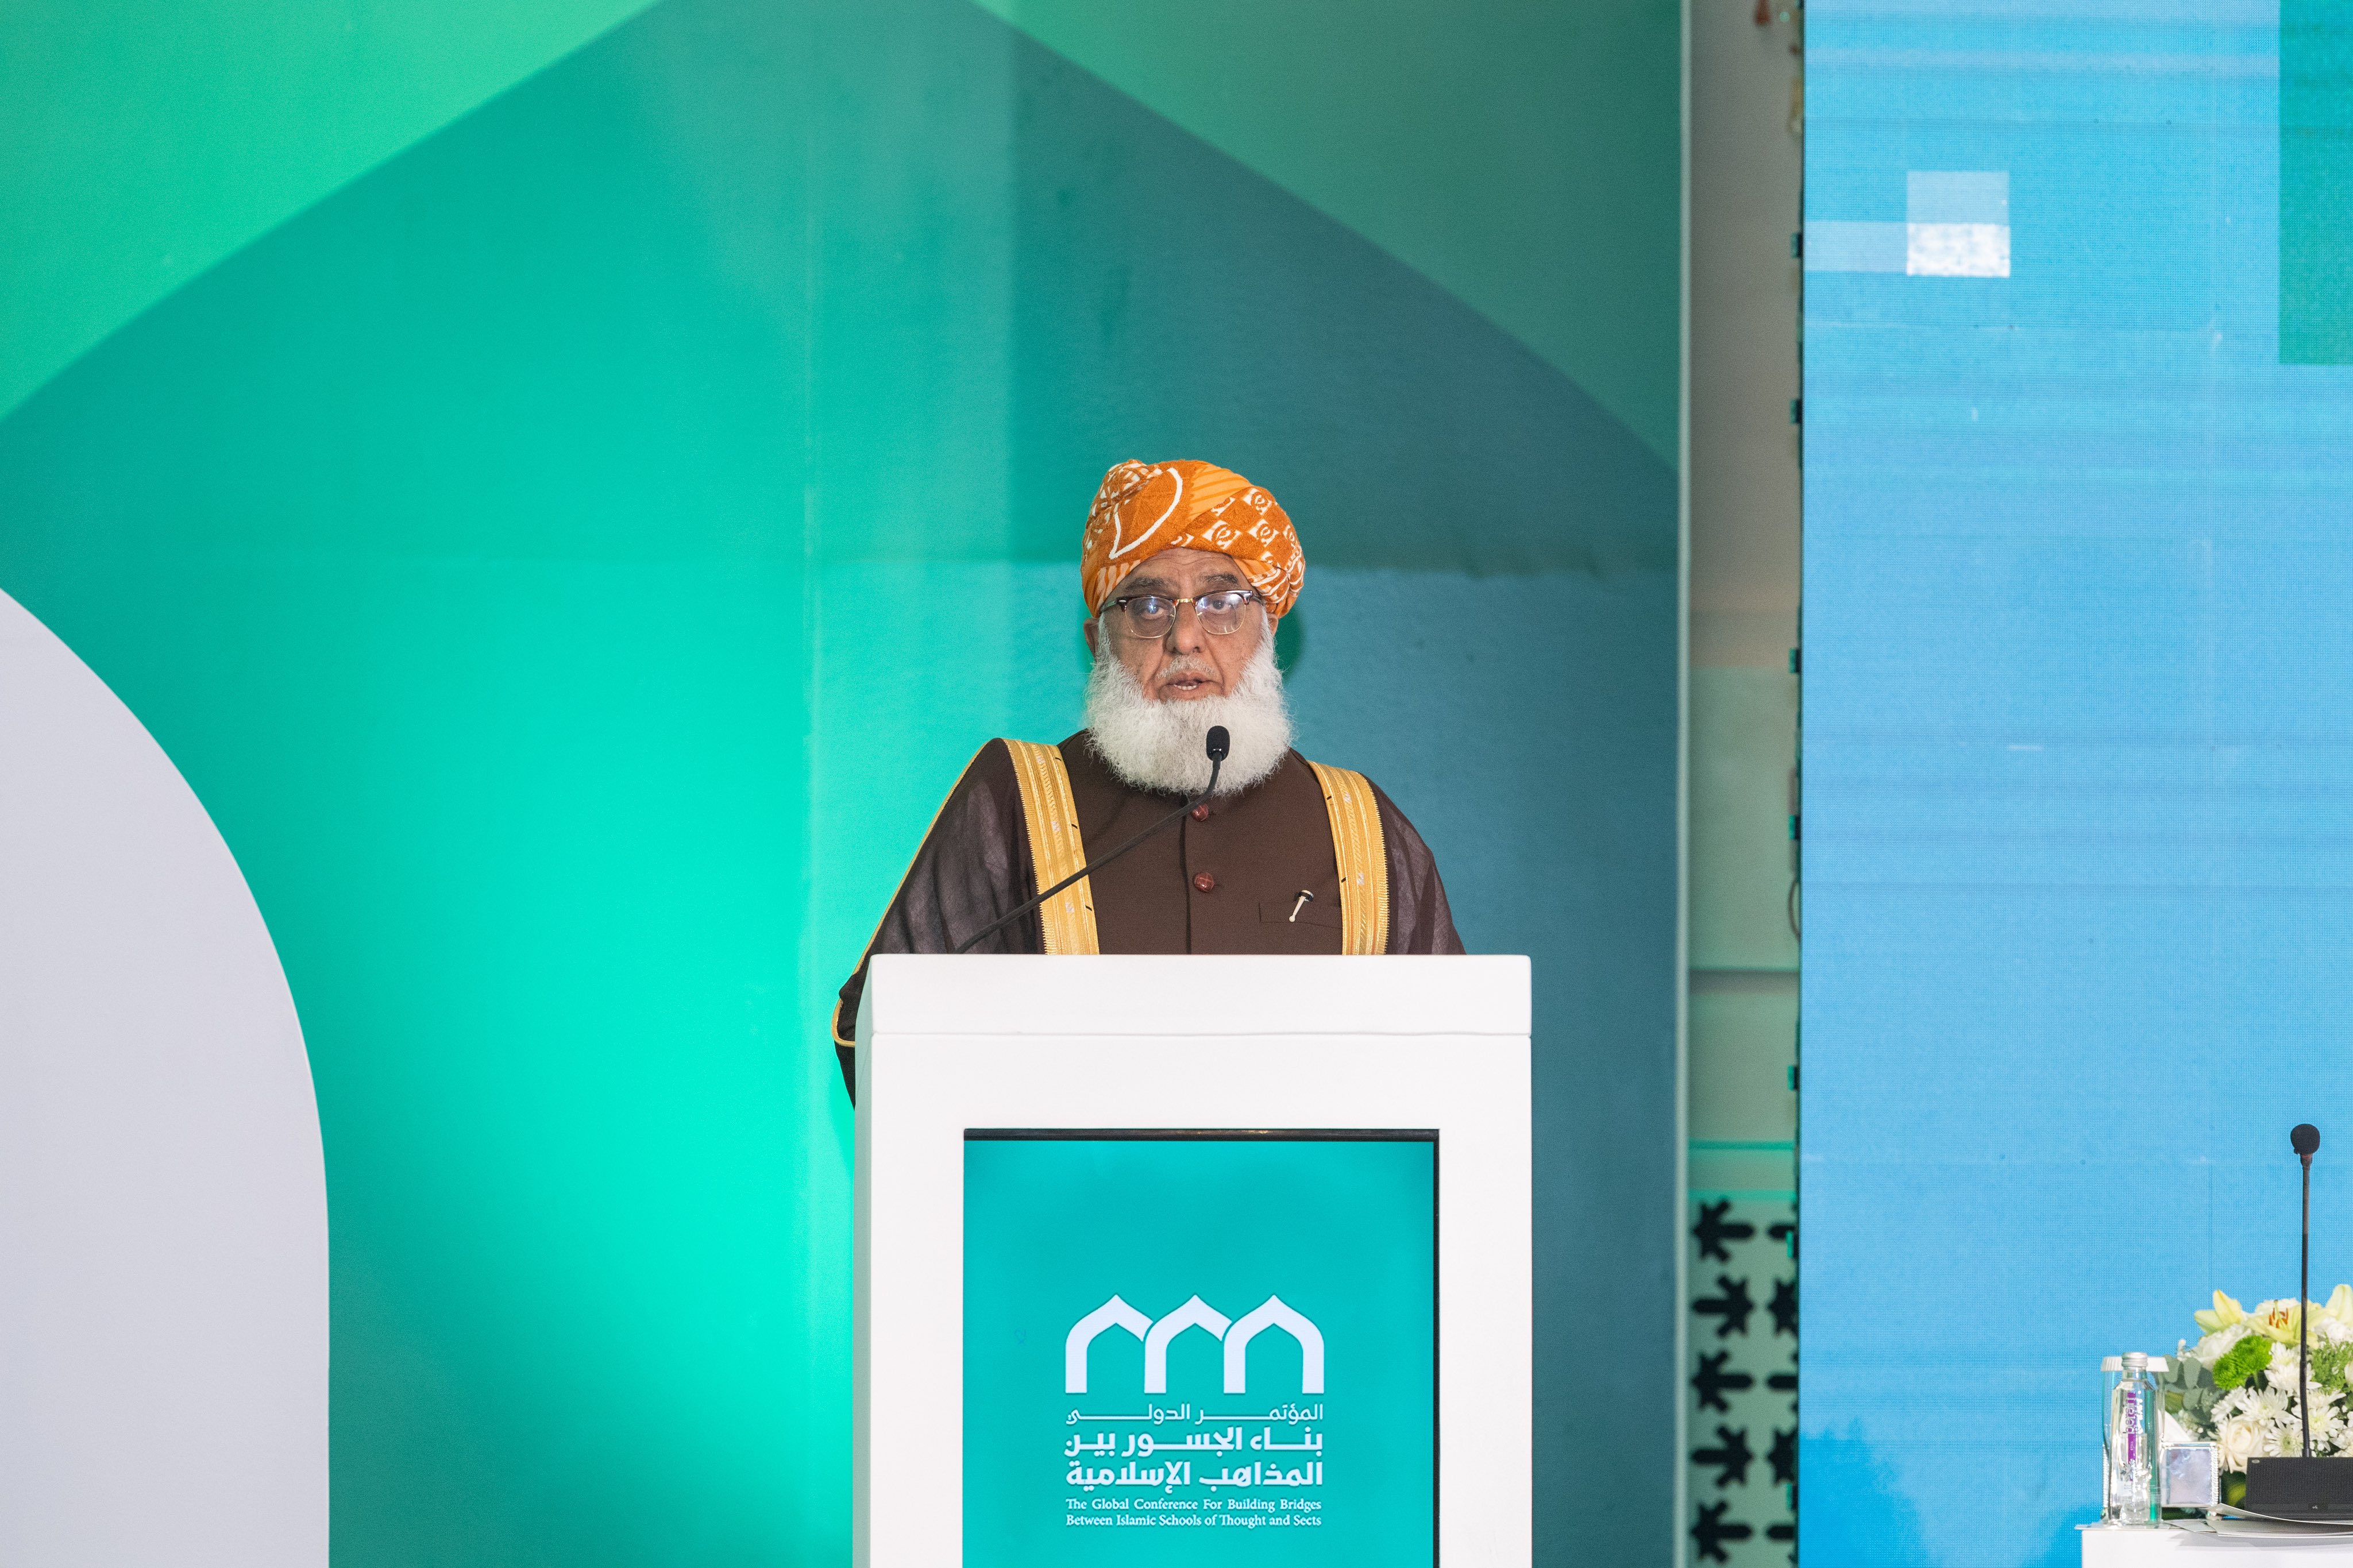 جمعیت علمائے اسلام پاکستان کے امیر شیخ فضل الرحمن بن مفتی محمود ”اسلامی مذاہب کے درمیان پلوں کی تعمیر“ کانفرنس کےافتتاحی اجلاس سے خطاب کرتے ہوئے: